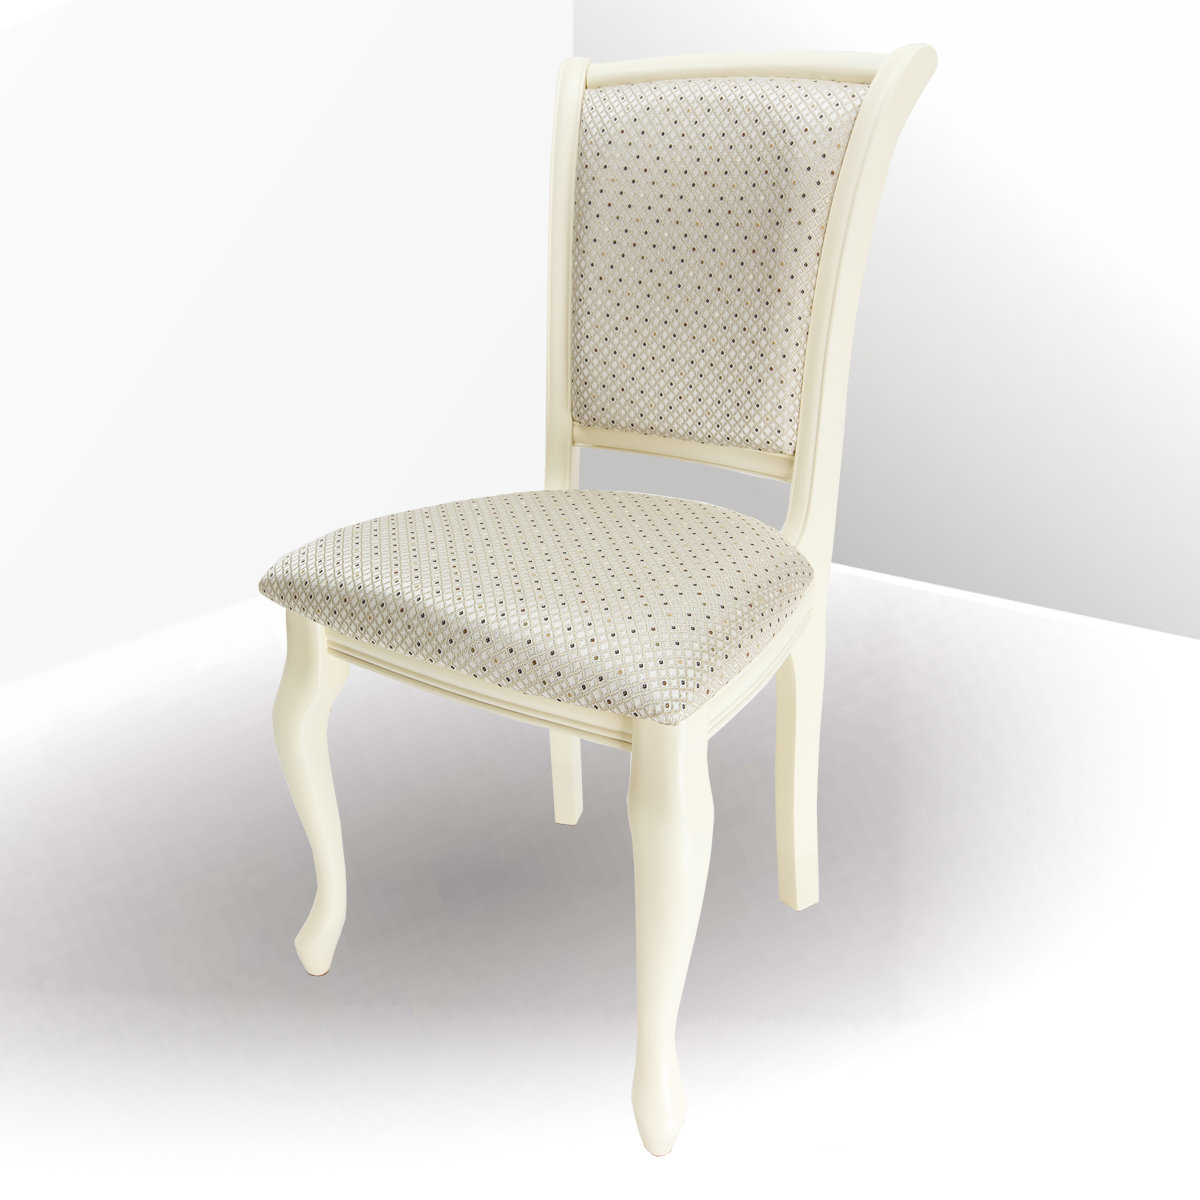 белые стулья с мягким сиденьем